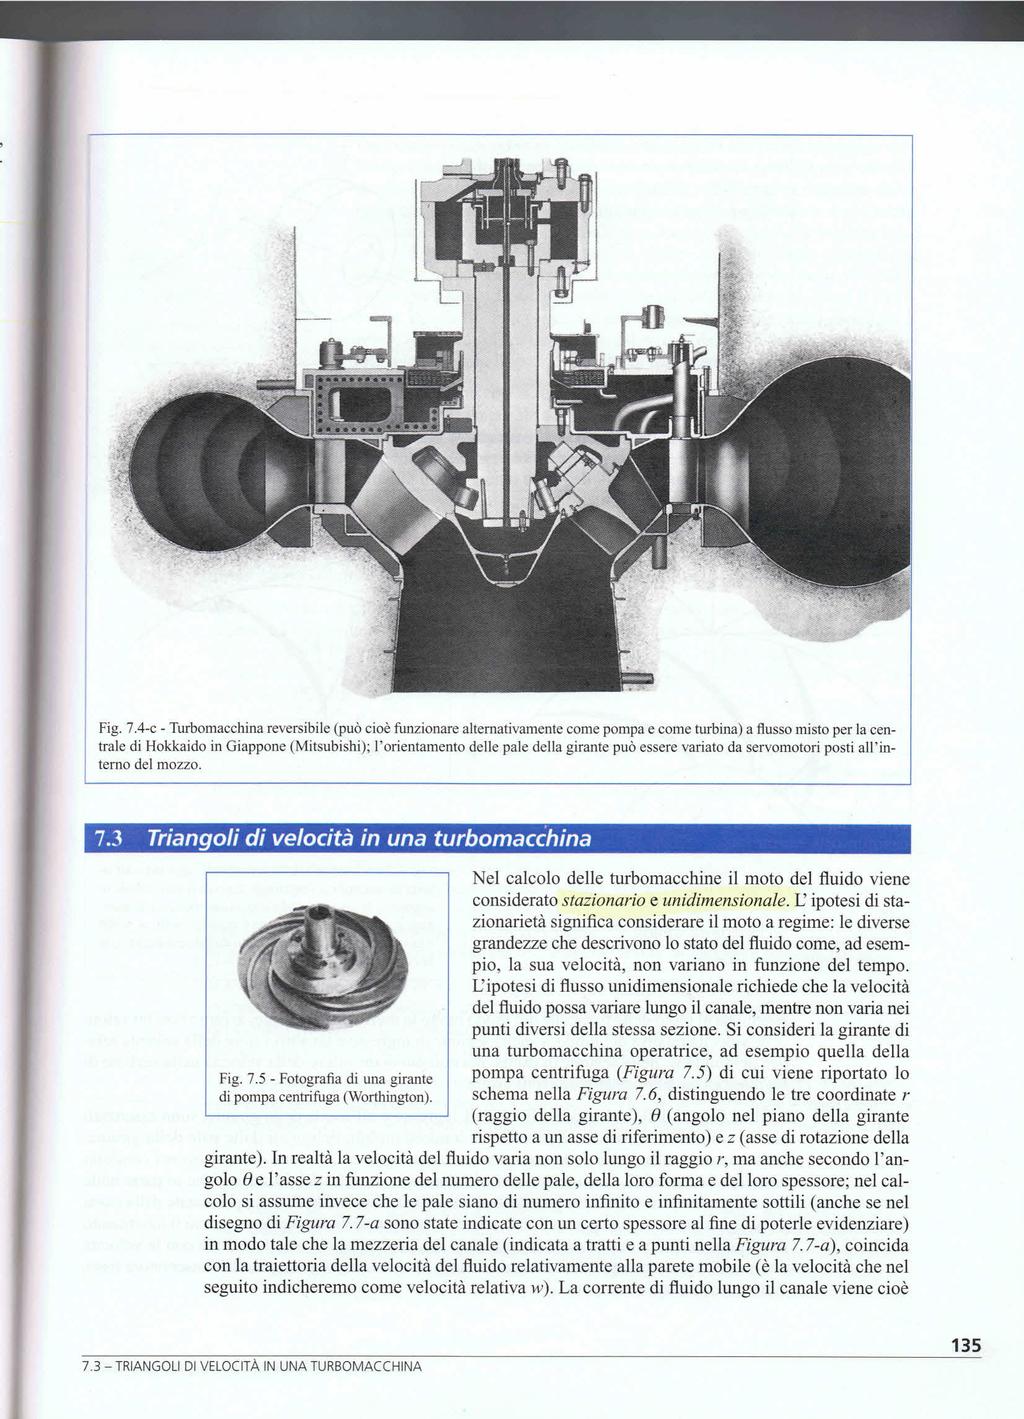 Nel calcolo delle turbomacchine il moto del fluido viene considerato stazionario e unidimensionale.